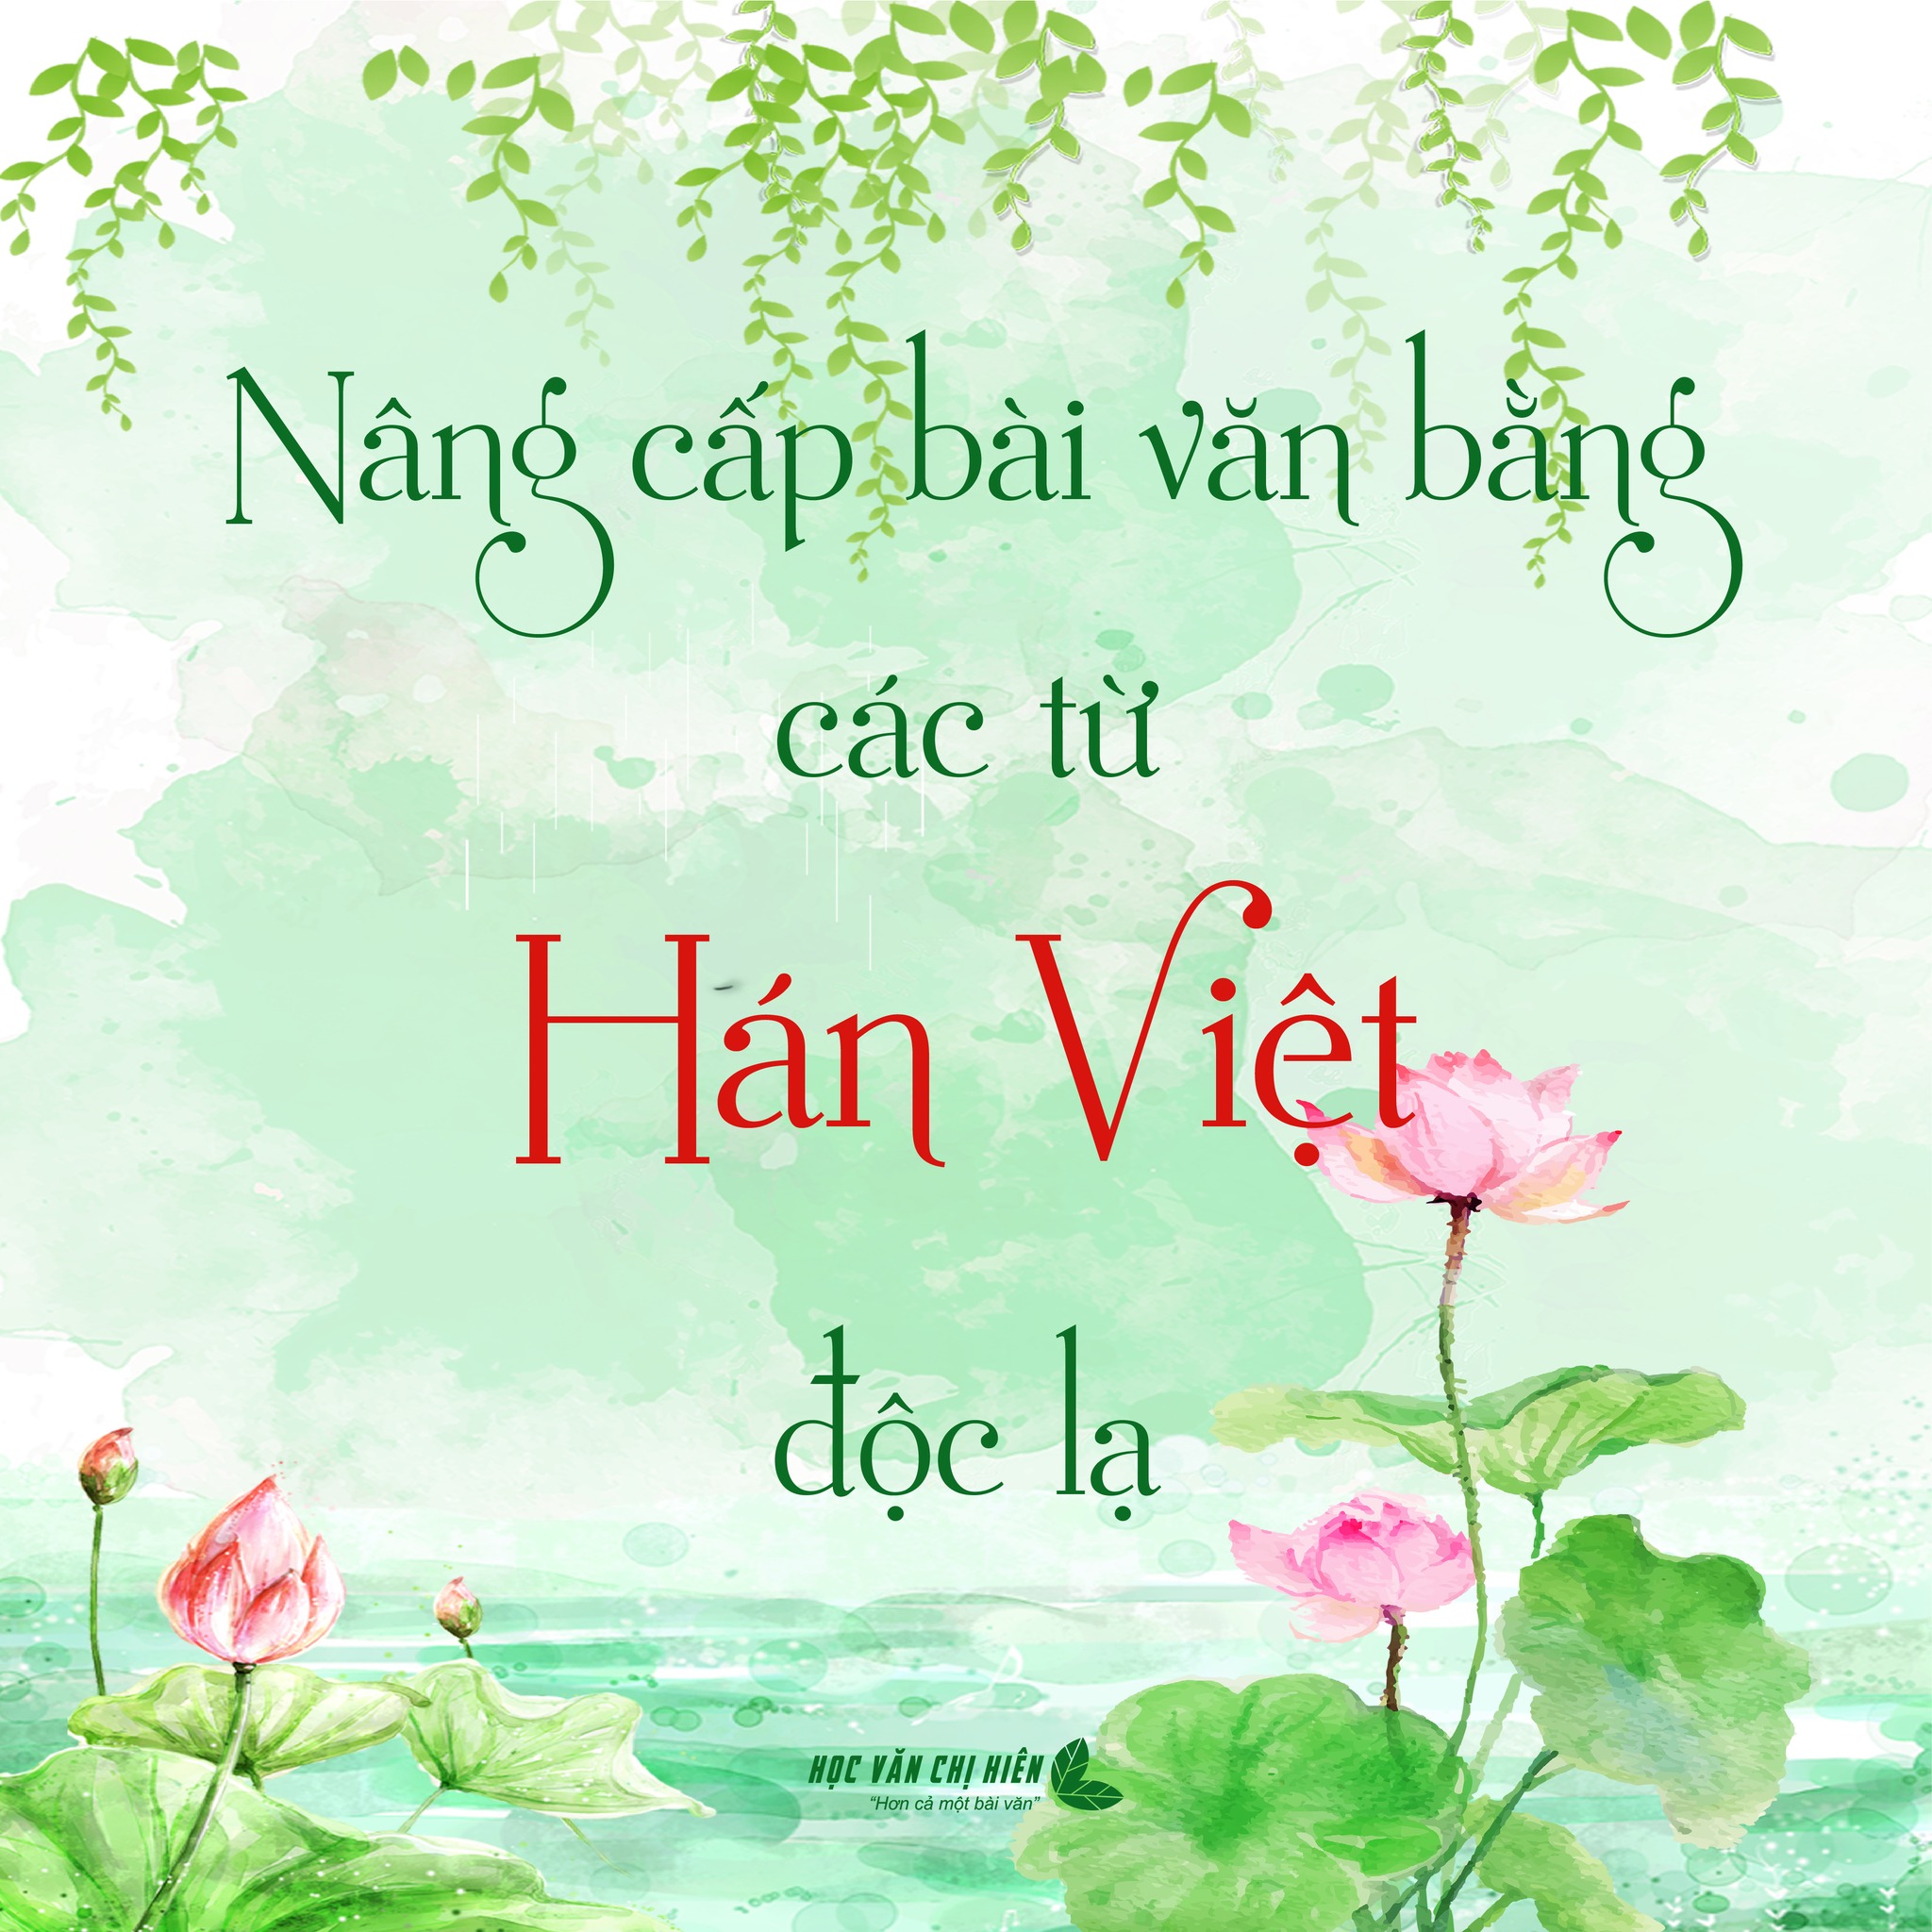 Nâng cấp bài văn bằng các từ Hán Việt độc lạ